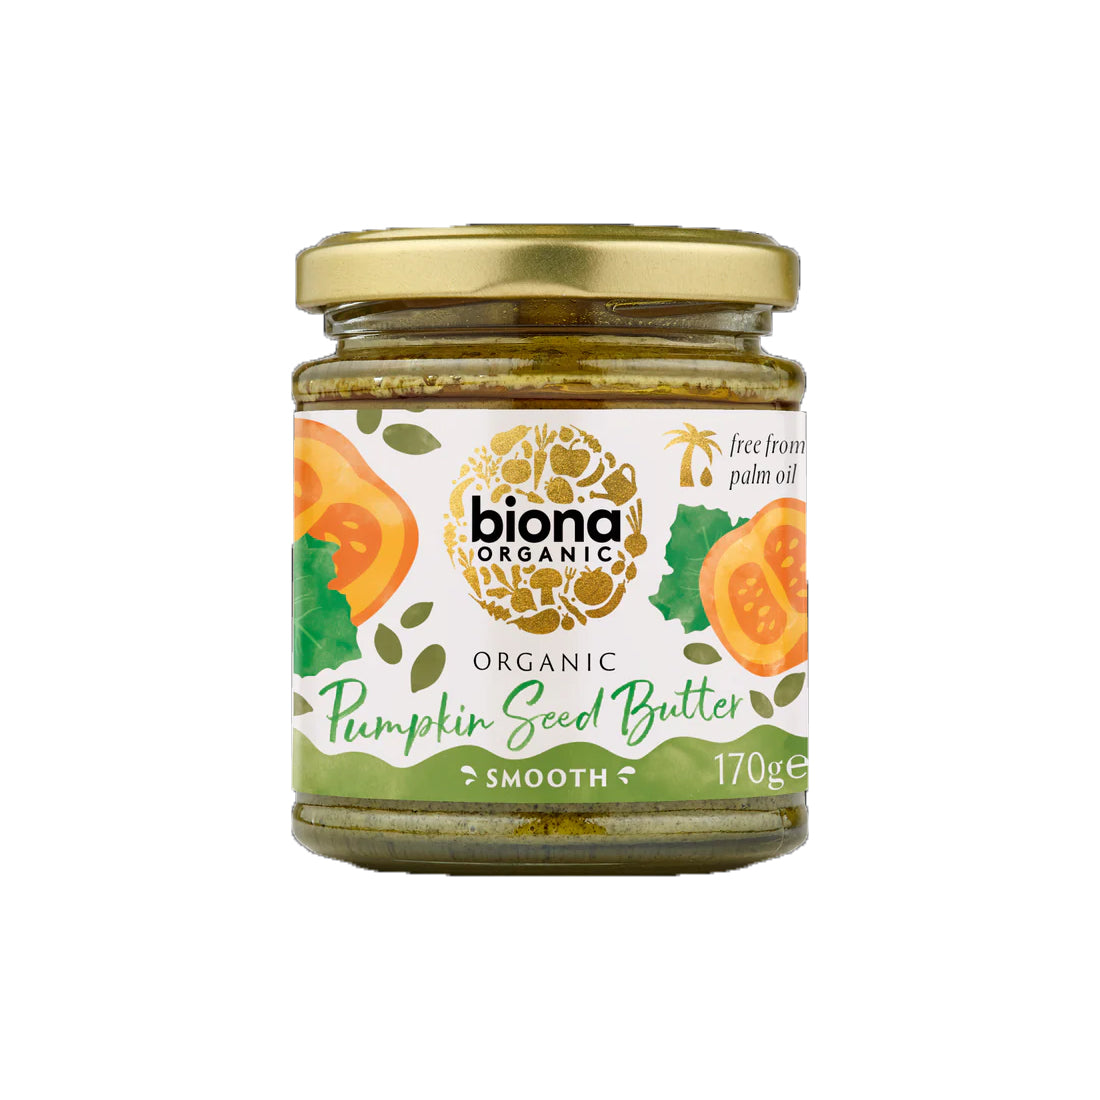 biona-organic-pumpkin-seed-butter-170g